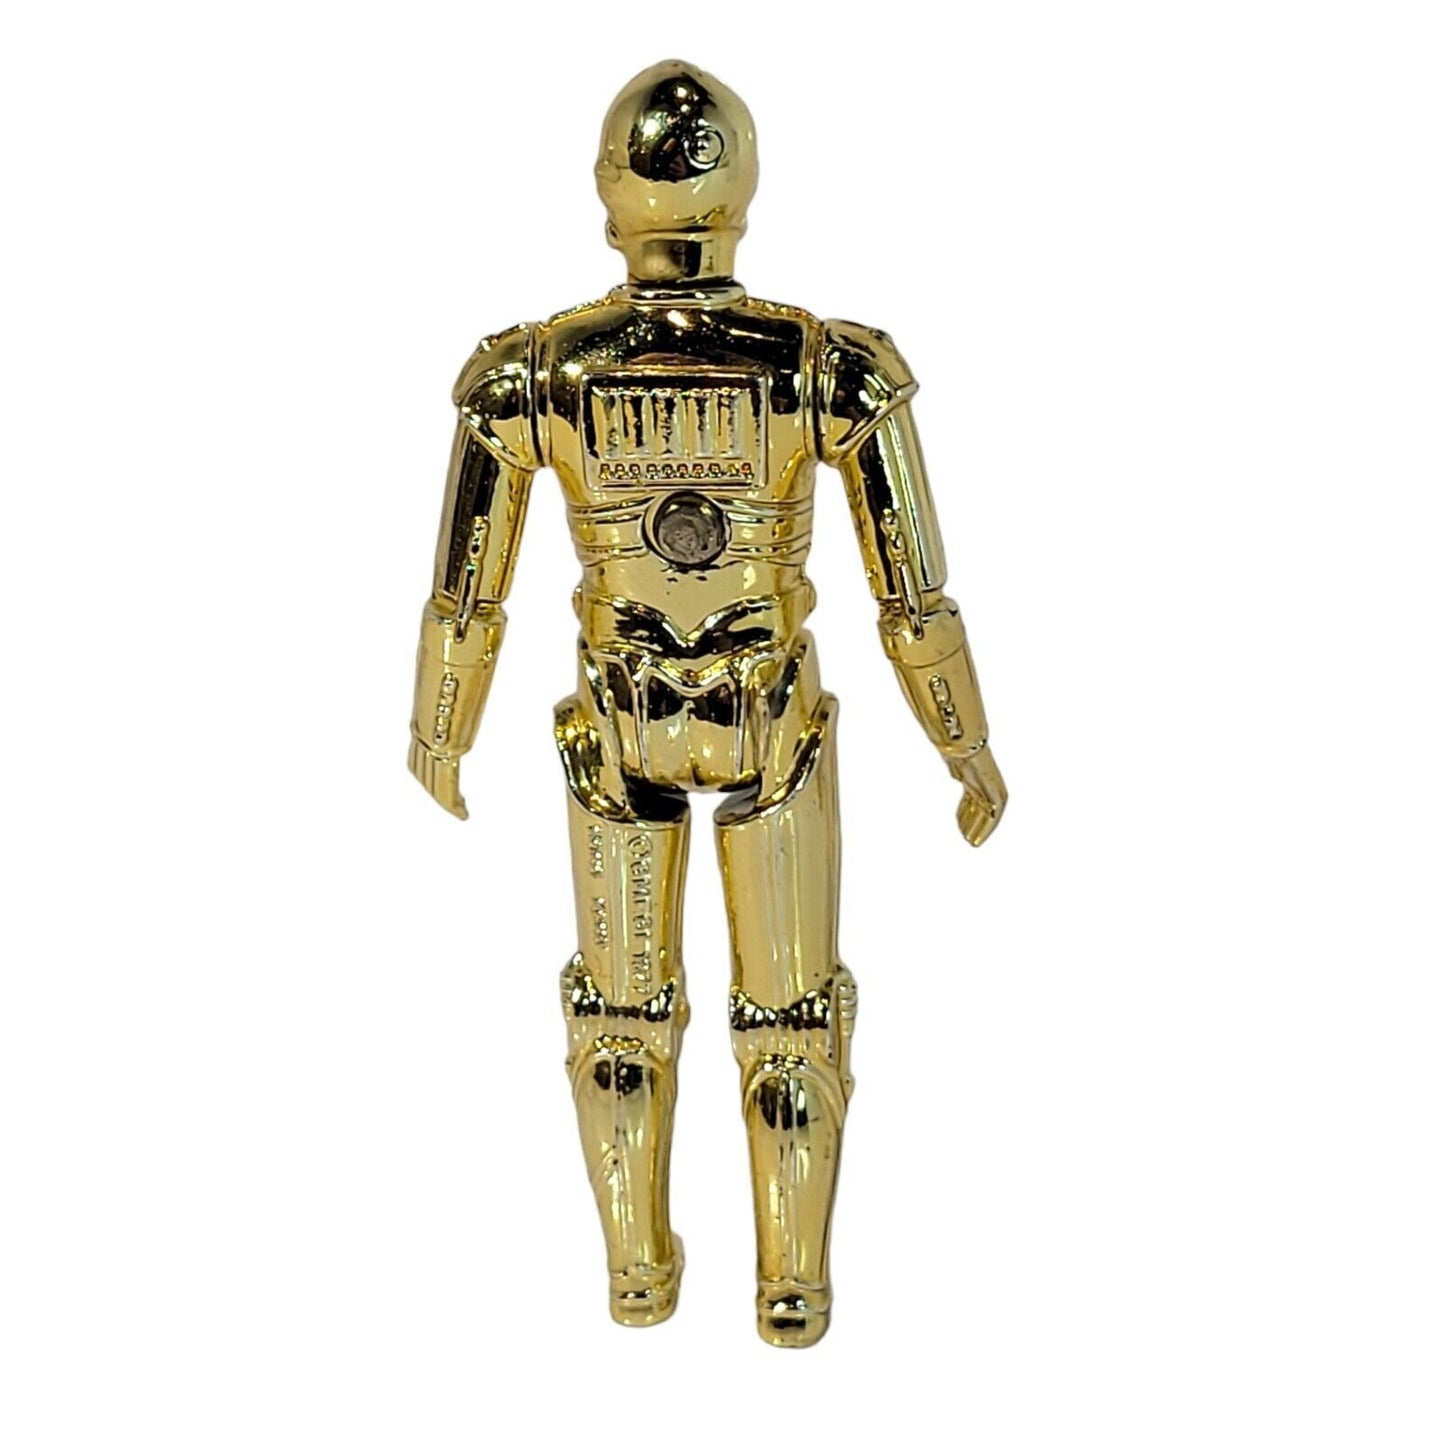 1977 Kenner Vintage Star Wars C-3PO Action Figure with 12 Back Cardback